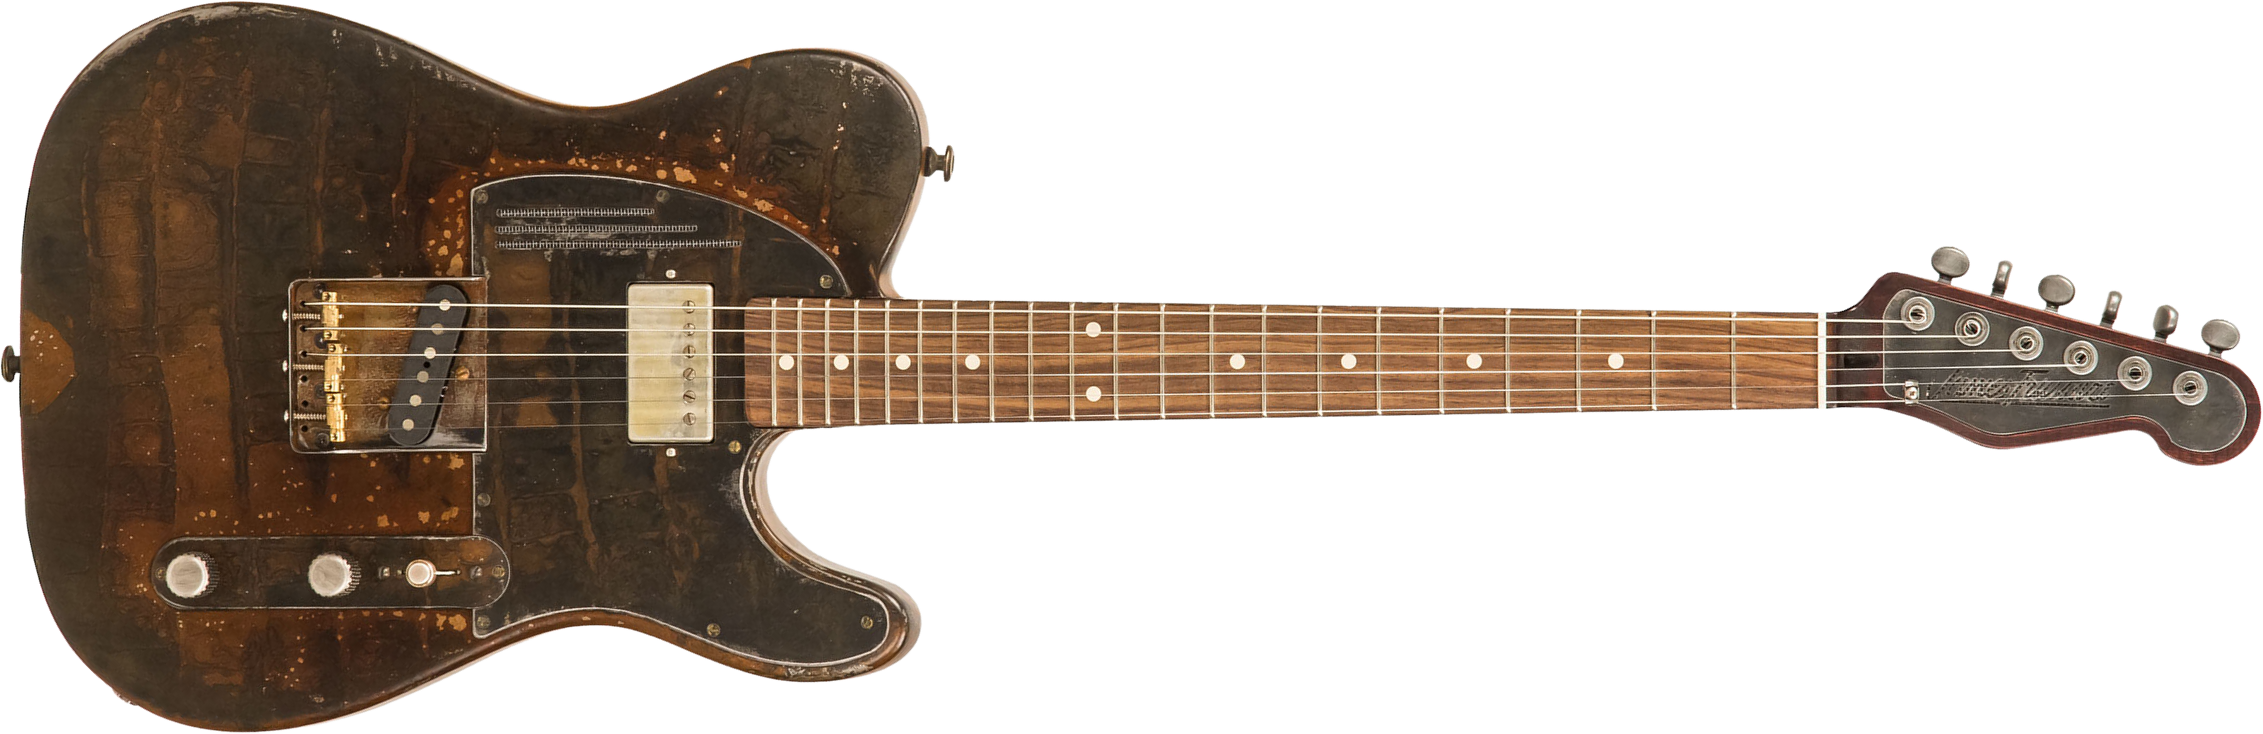 James Trussart Steelcaster Plain Back Sh Pf #20034 - Rust O Matic Gator - Guitare Électrique 1/2 Caisse - Main picture